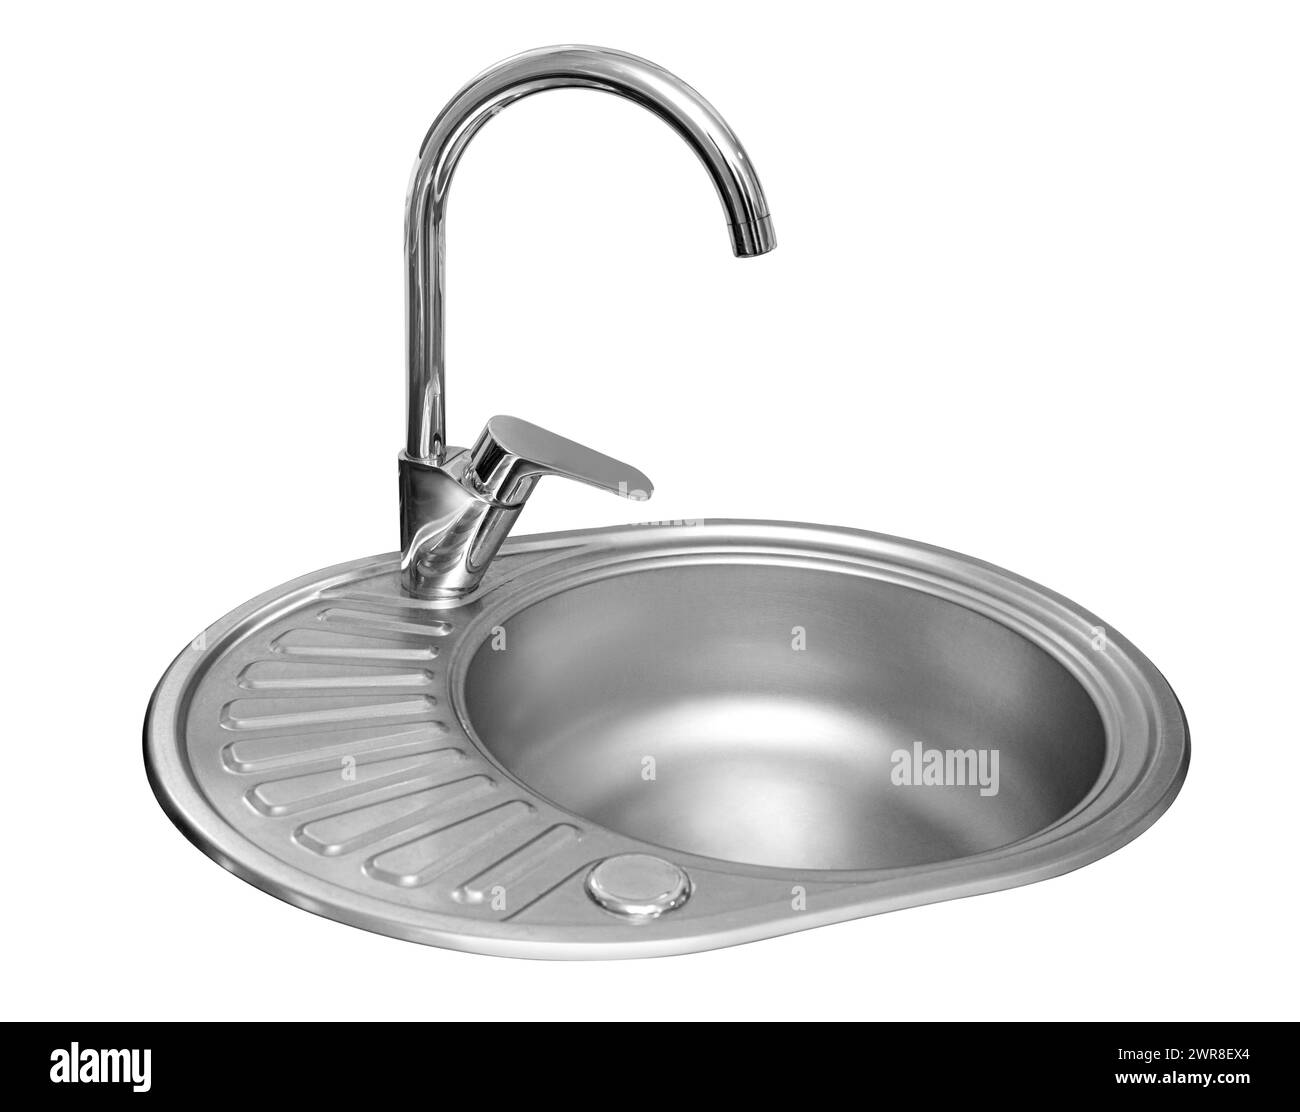 lavello in metallo con rubinetto da cucina isolato su sfondo bianco con percorso di ritaglio Foto Stock